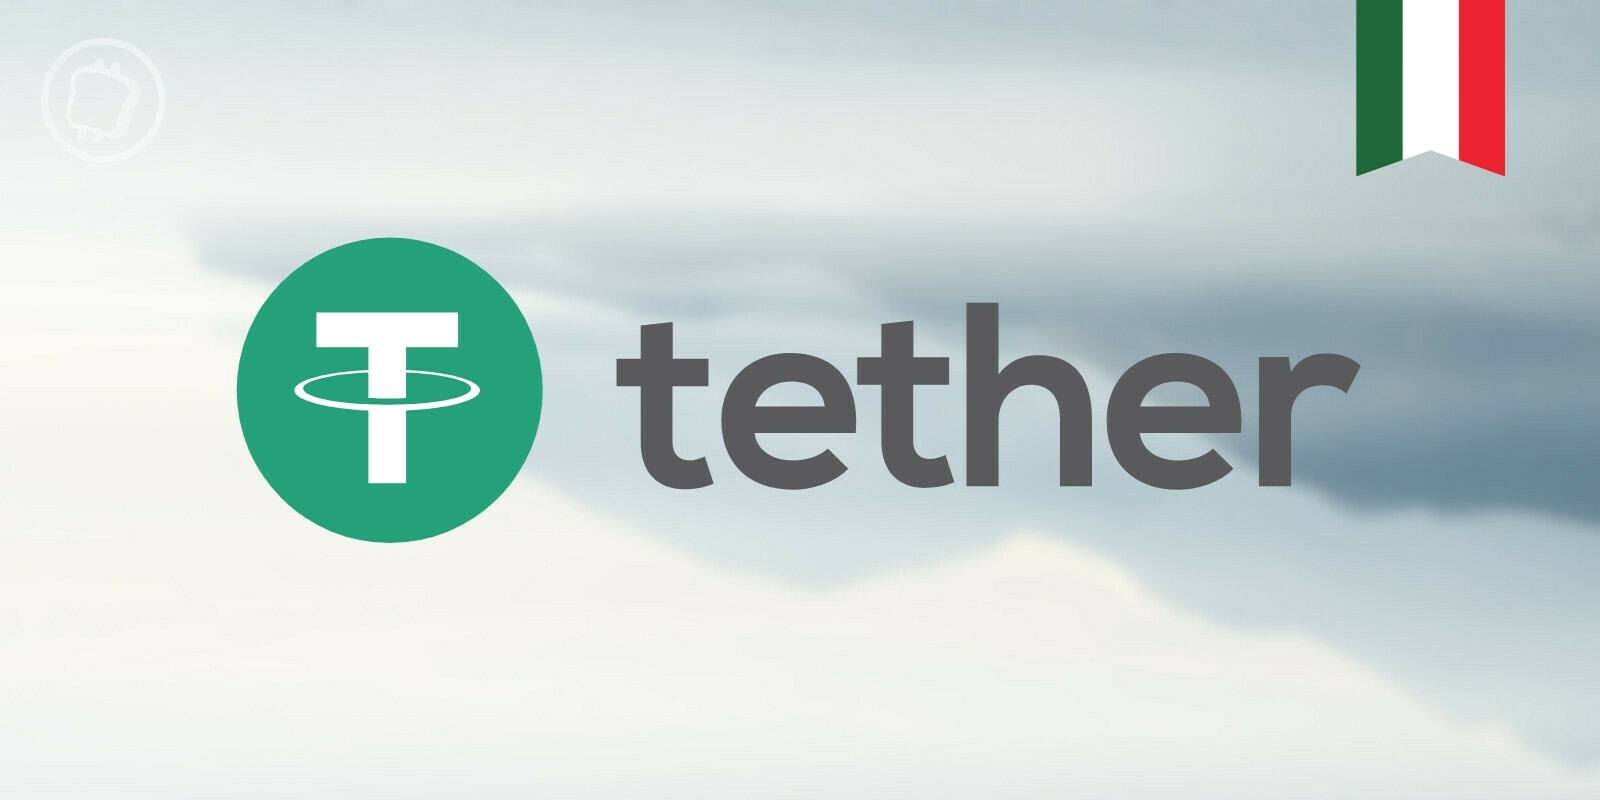 Tether publiera désormais des audits mensuels de ses réserves via la branche italienne de BDO